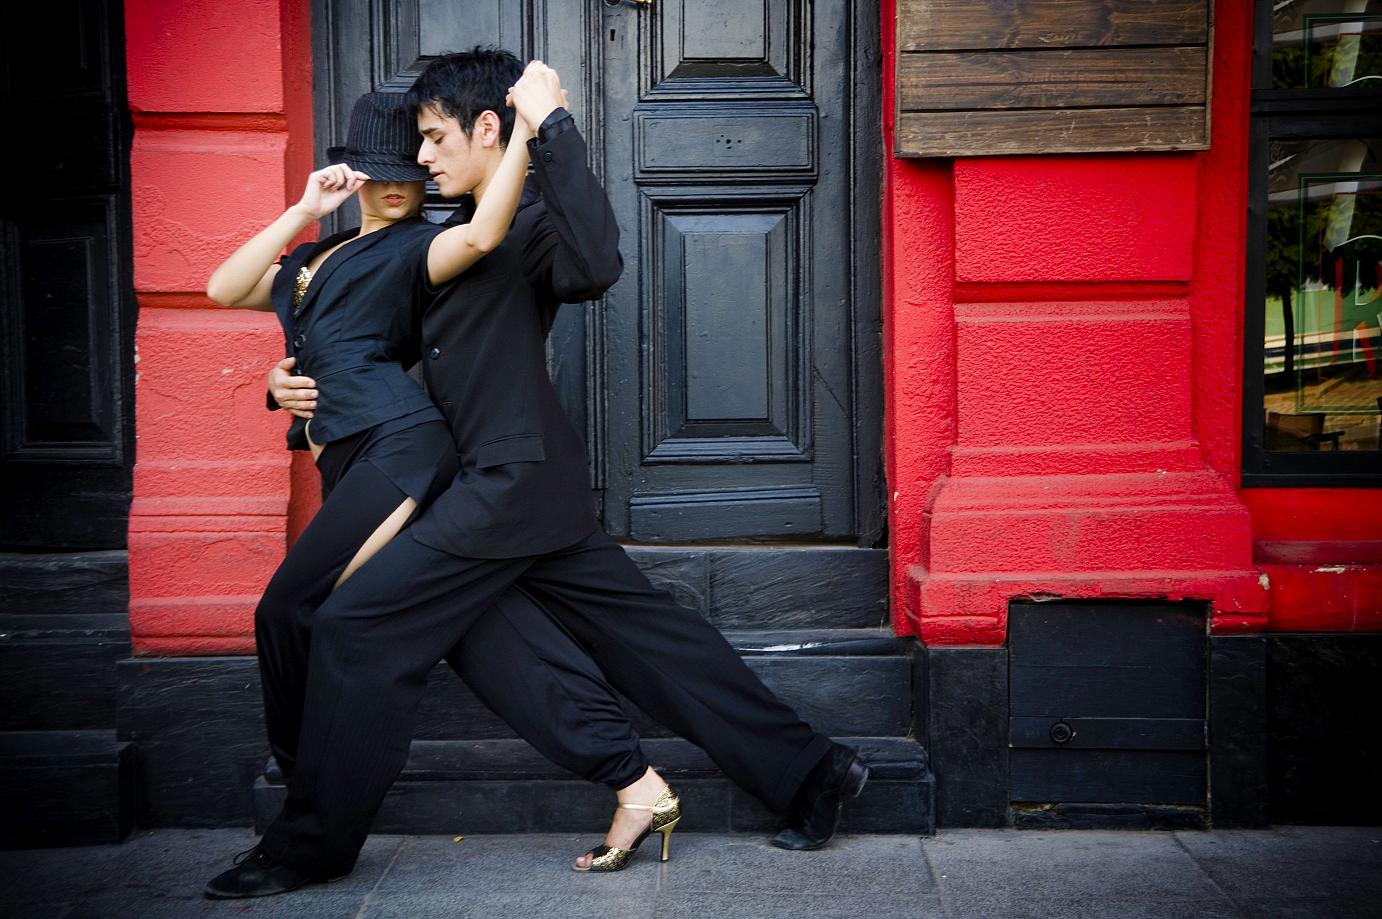 Dancing Tango in the street